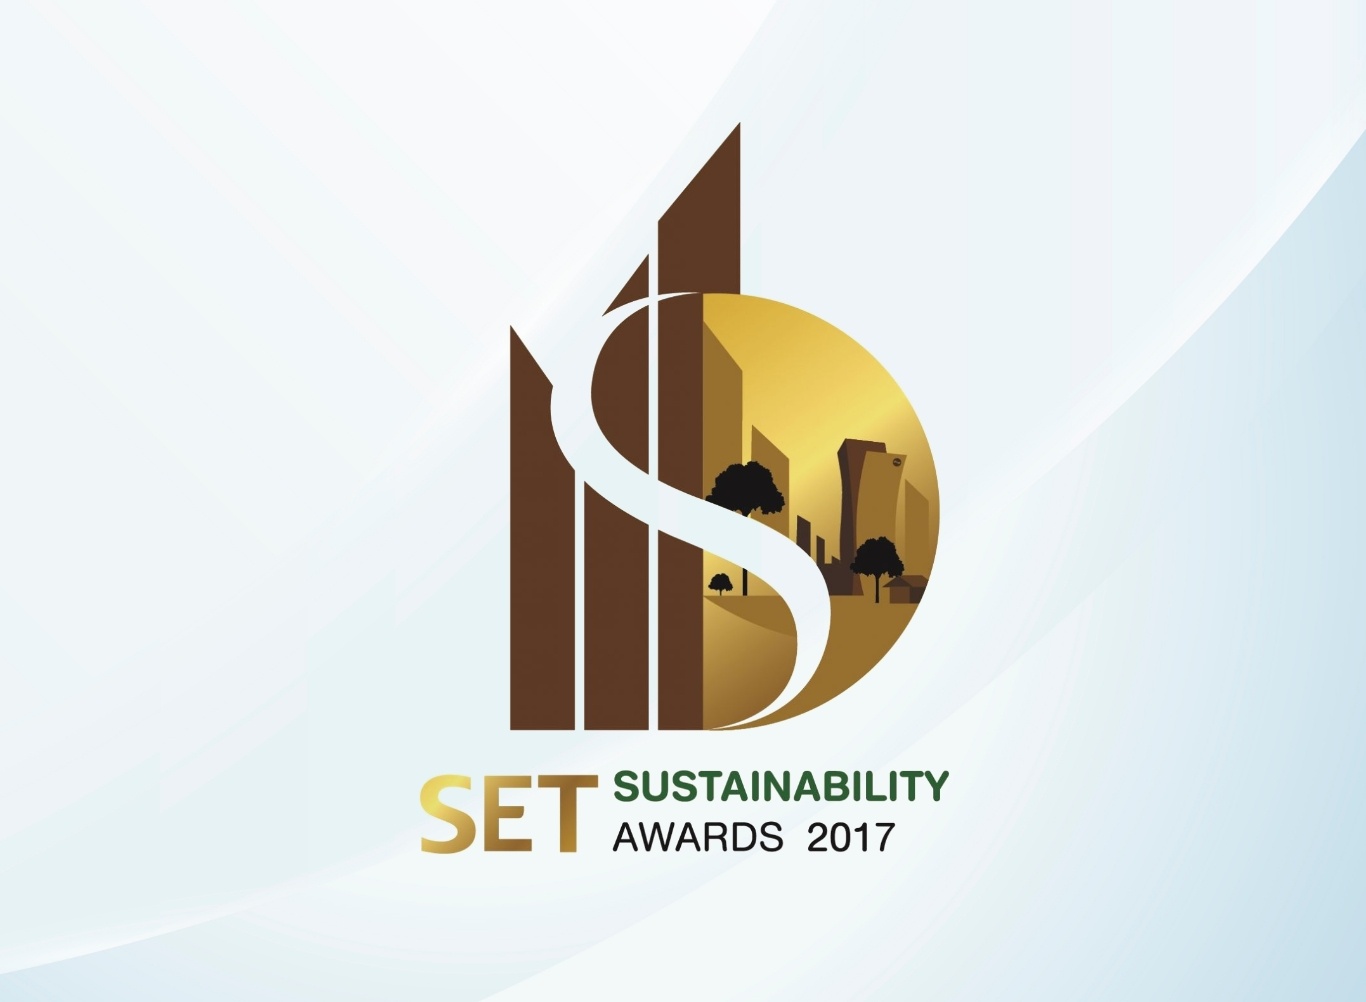 รางวัลบริษัทจดทะเบียนด้านความยั่งยืนดีเด่น (Outstanding Sustainability Awards)